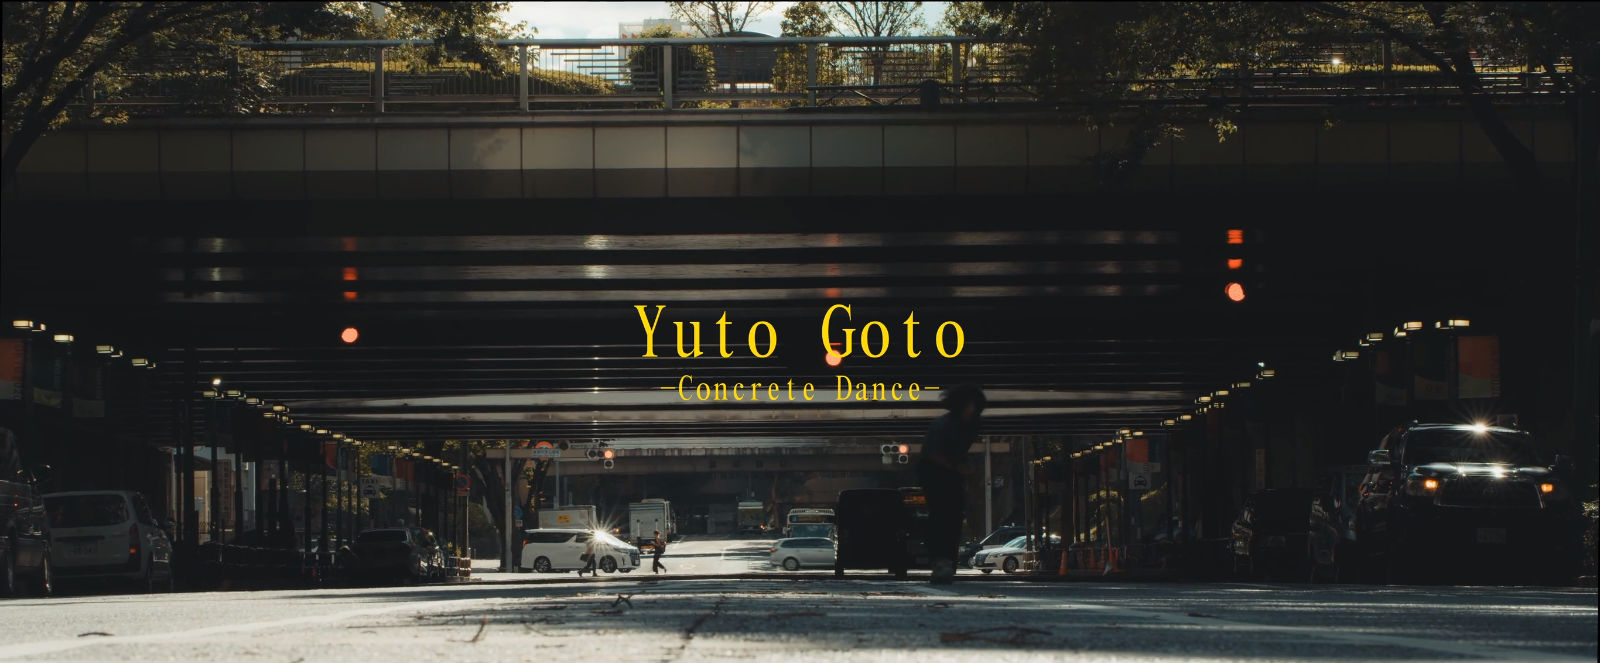 YUTO GOTO  | CONCRETE DANCE